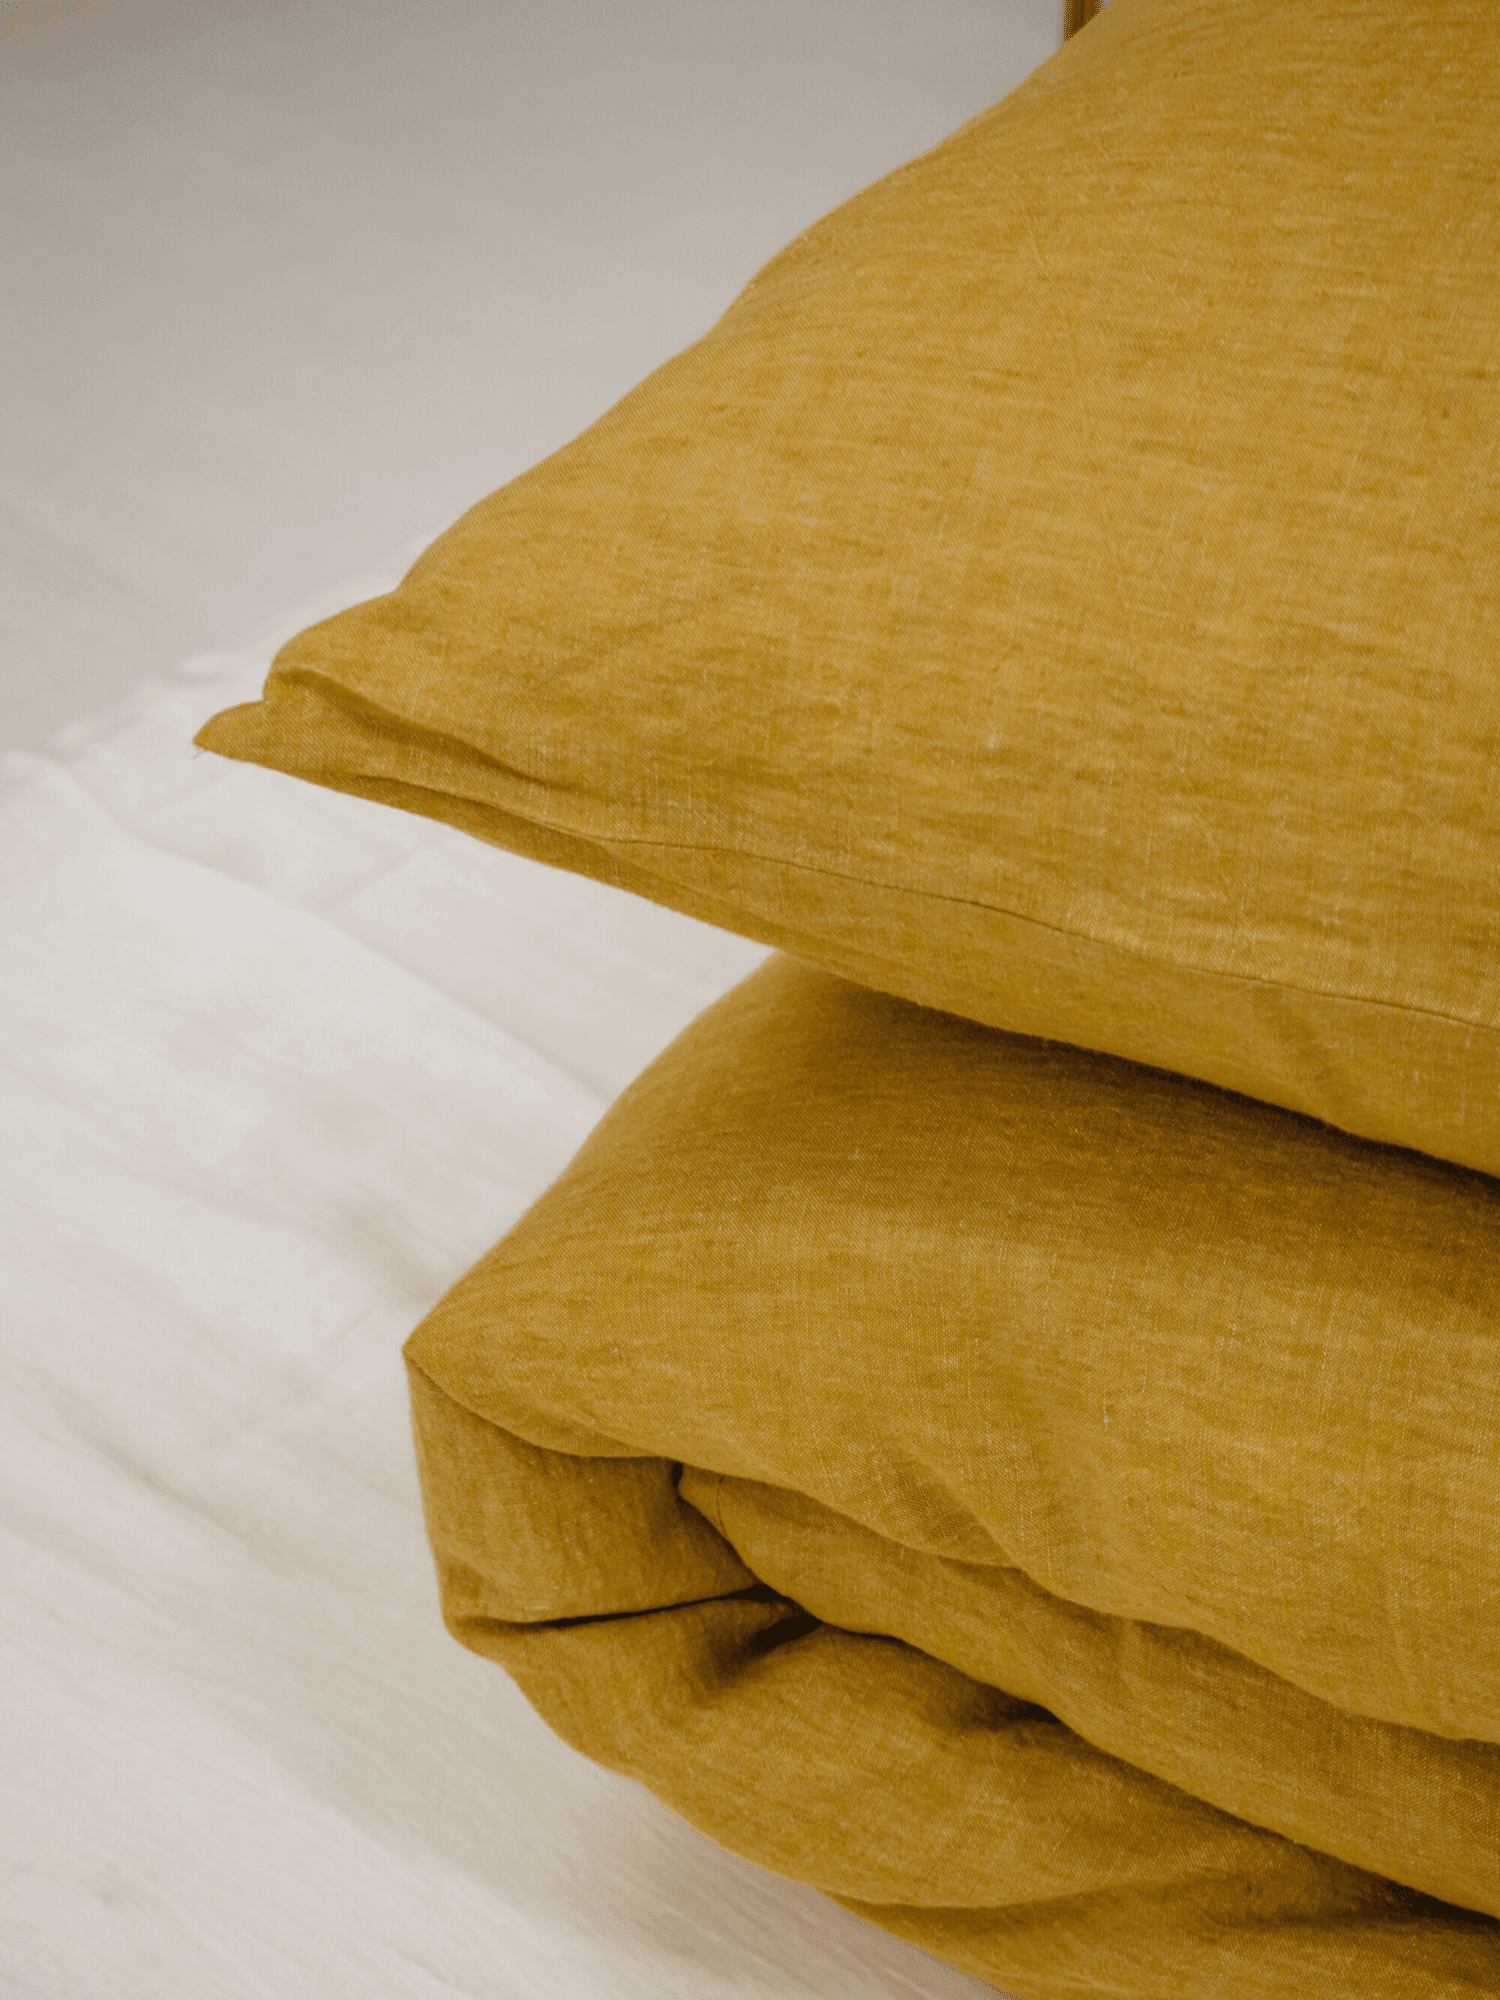 Yellow Soft Linen Pillowcase - Bedroom, label, Linen pillowcase - FlaxLin Eco Textiles